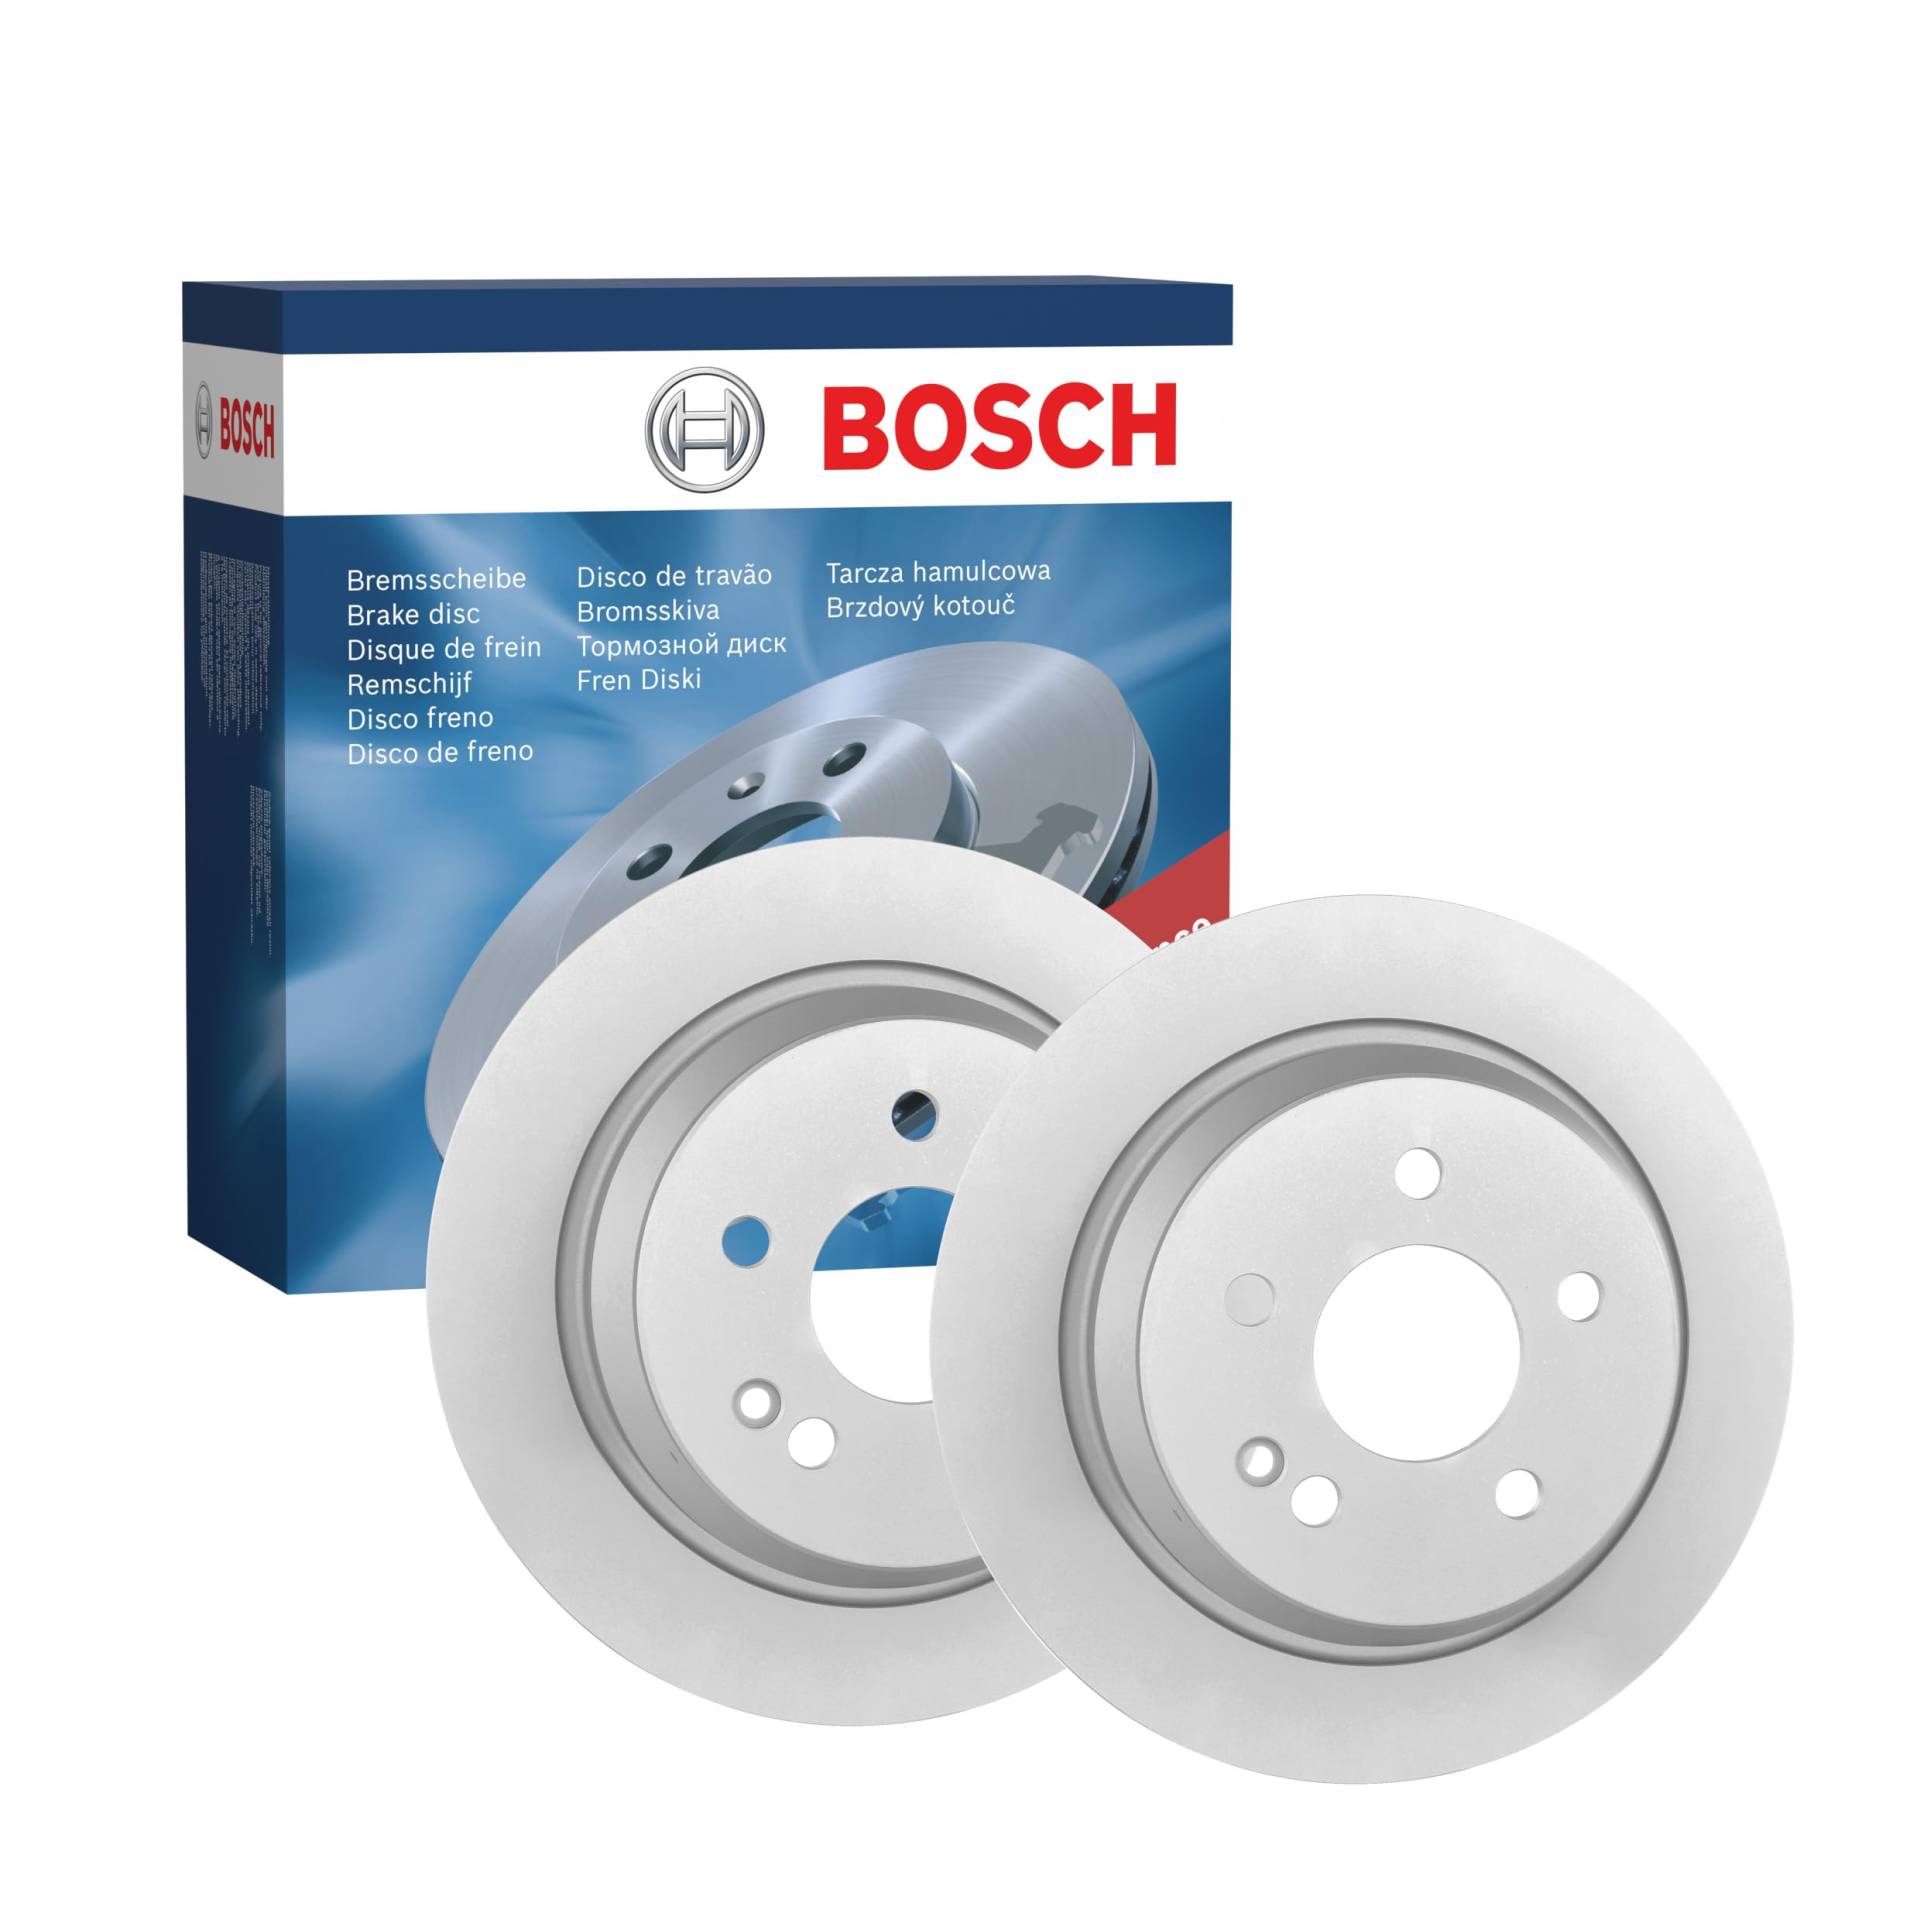 Bosch BD976 Bremsscheiben - Hinterachse - ECE-R90 Zertifizierung - zwei Bremsscheiben pro Set von Bosch Automotive